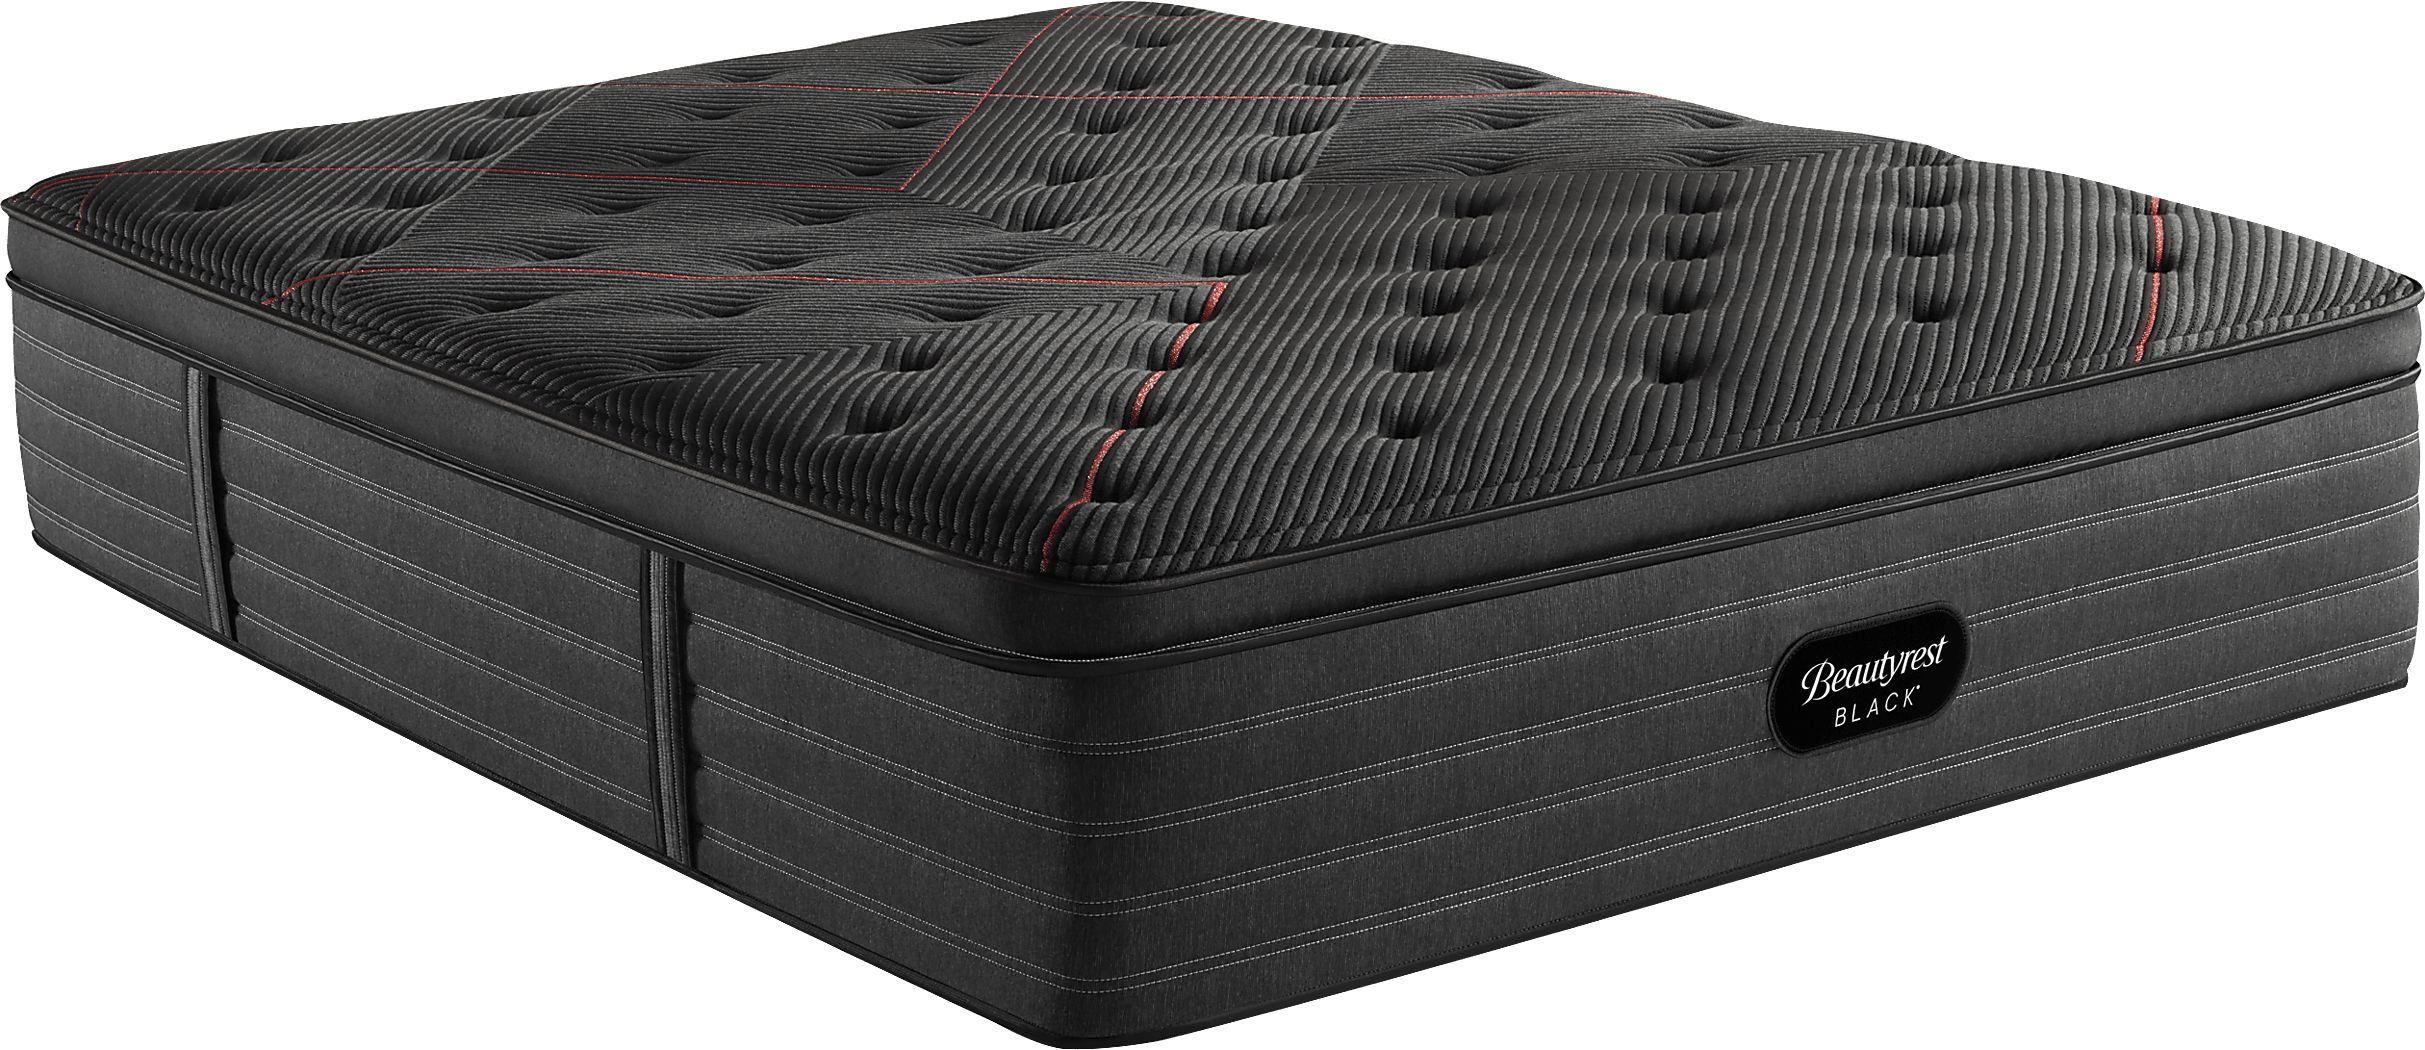 beautyrest perfectsmart plush pillow top queen mattress review